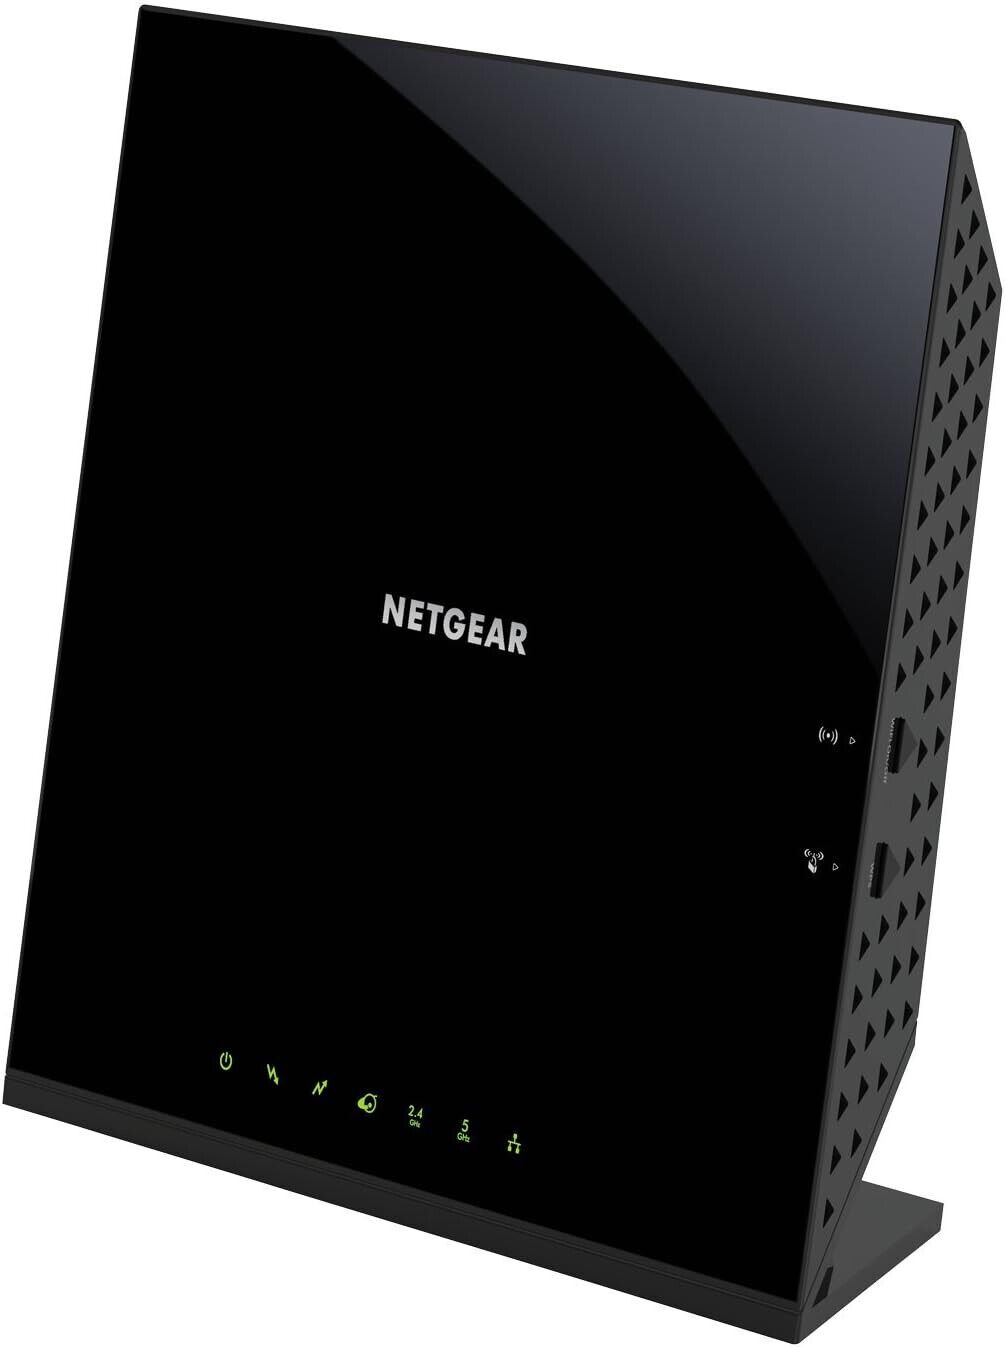 NETGEAR AC1600 Wifi Cable Modem Router C6250 - Black (C6250-100NAS)